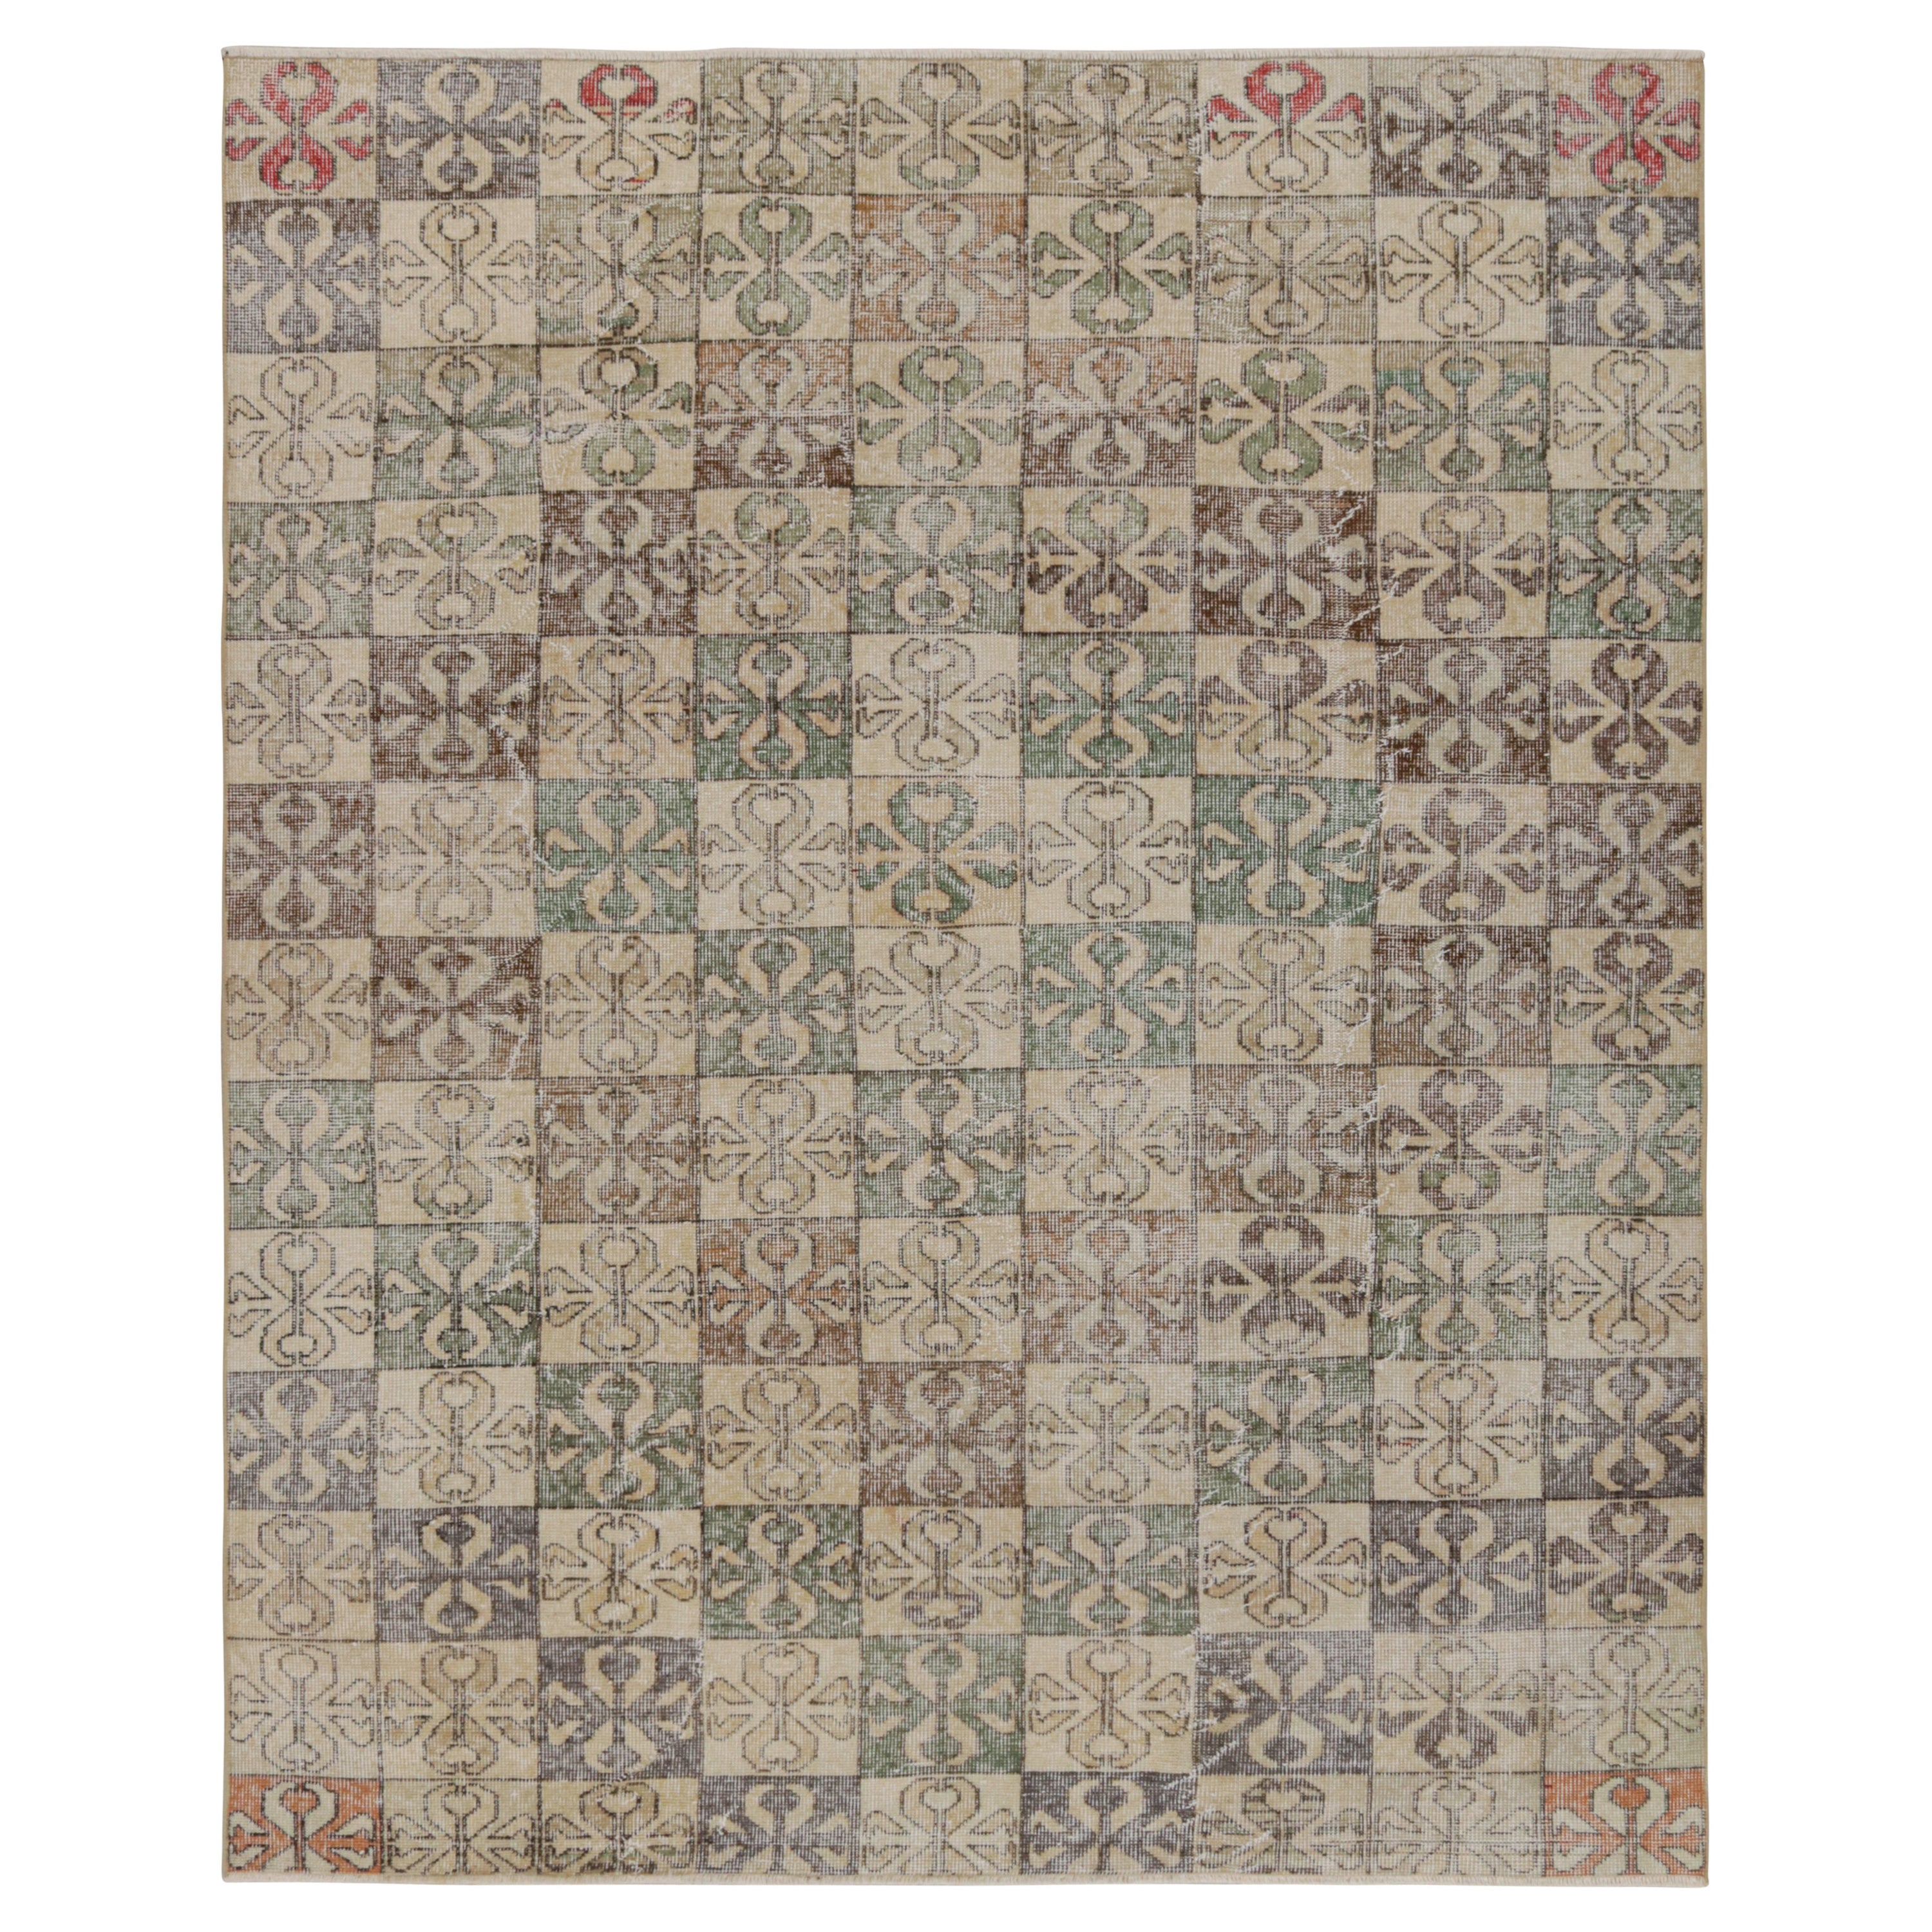 Vintage Zeki Müren Teppich, mit polychromen geometrischen Mustern, von Rug & Kilim